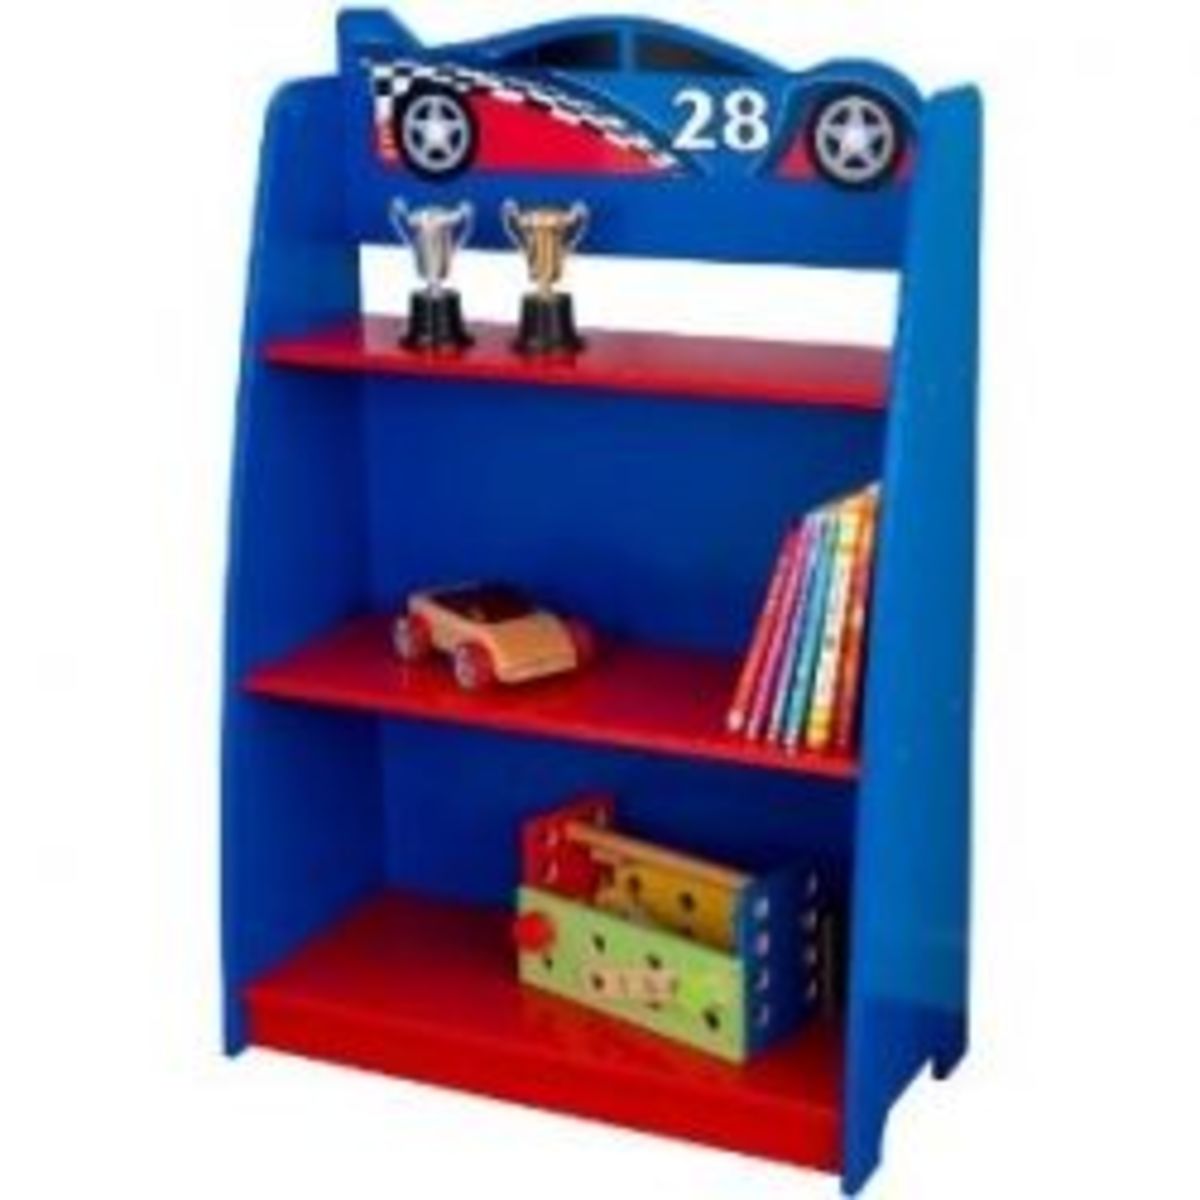 KidKraft Racecar Bookcase